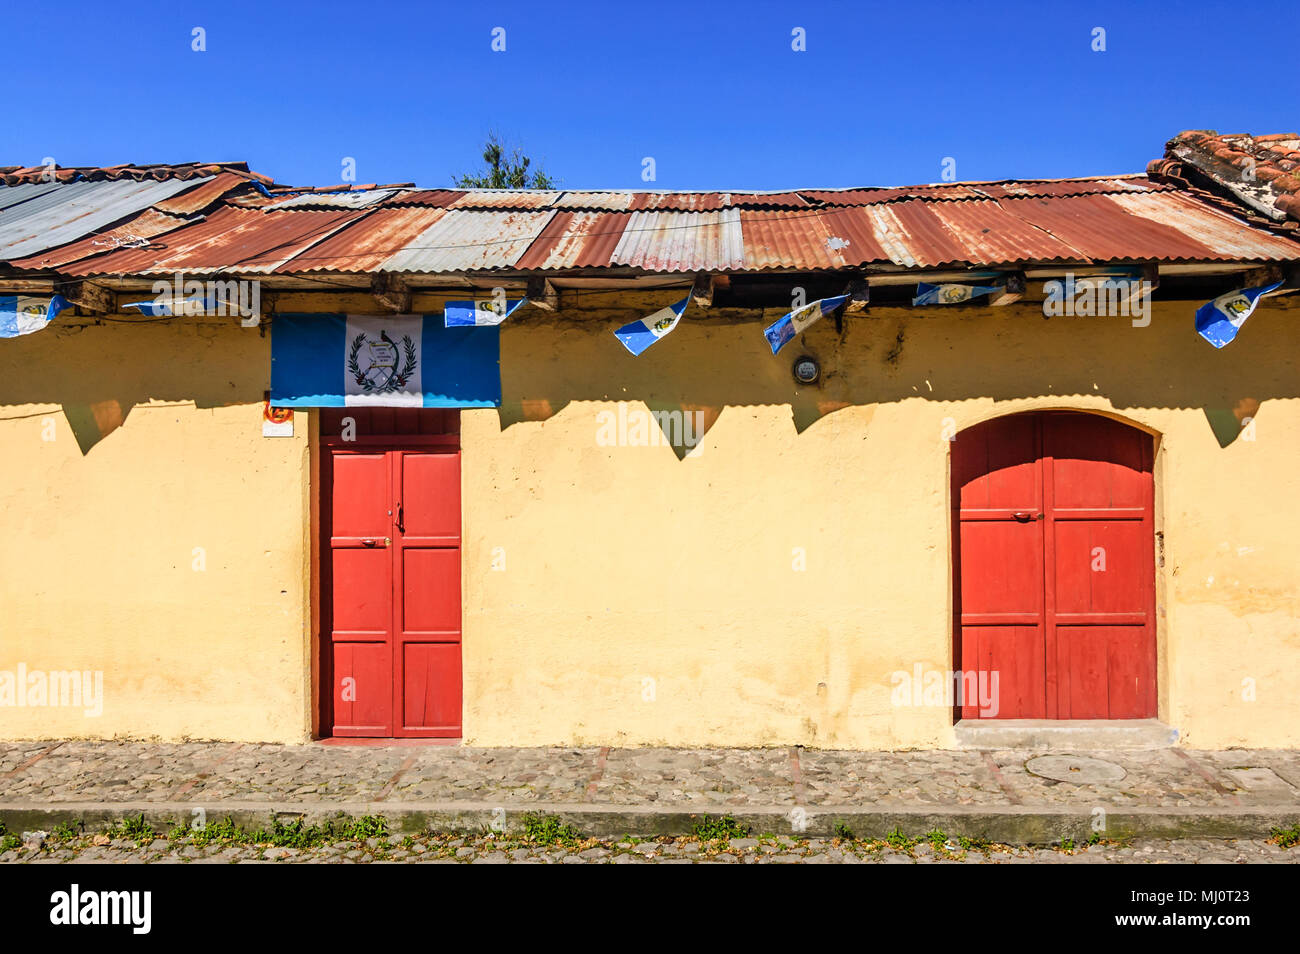 Antigua Guatemala - Ottobre 5, 2014: Vecchia casa dipinta adornata con bandiere Guatemalteca in città coloniale & UNESCO World Heritage Site di Antigua. Foto Stock